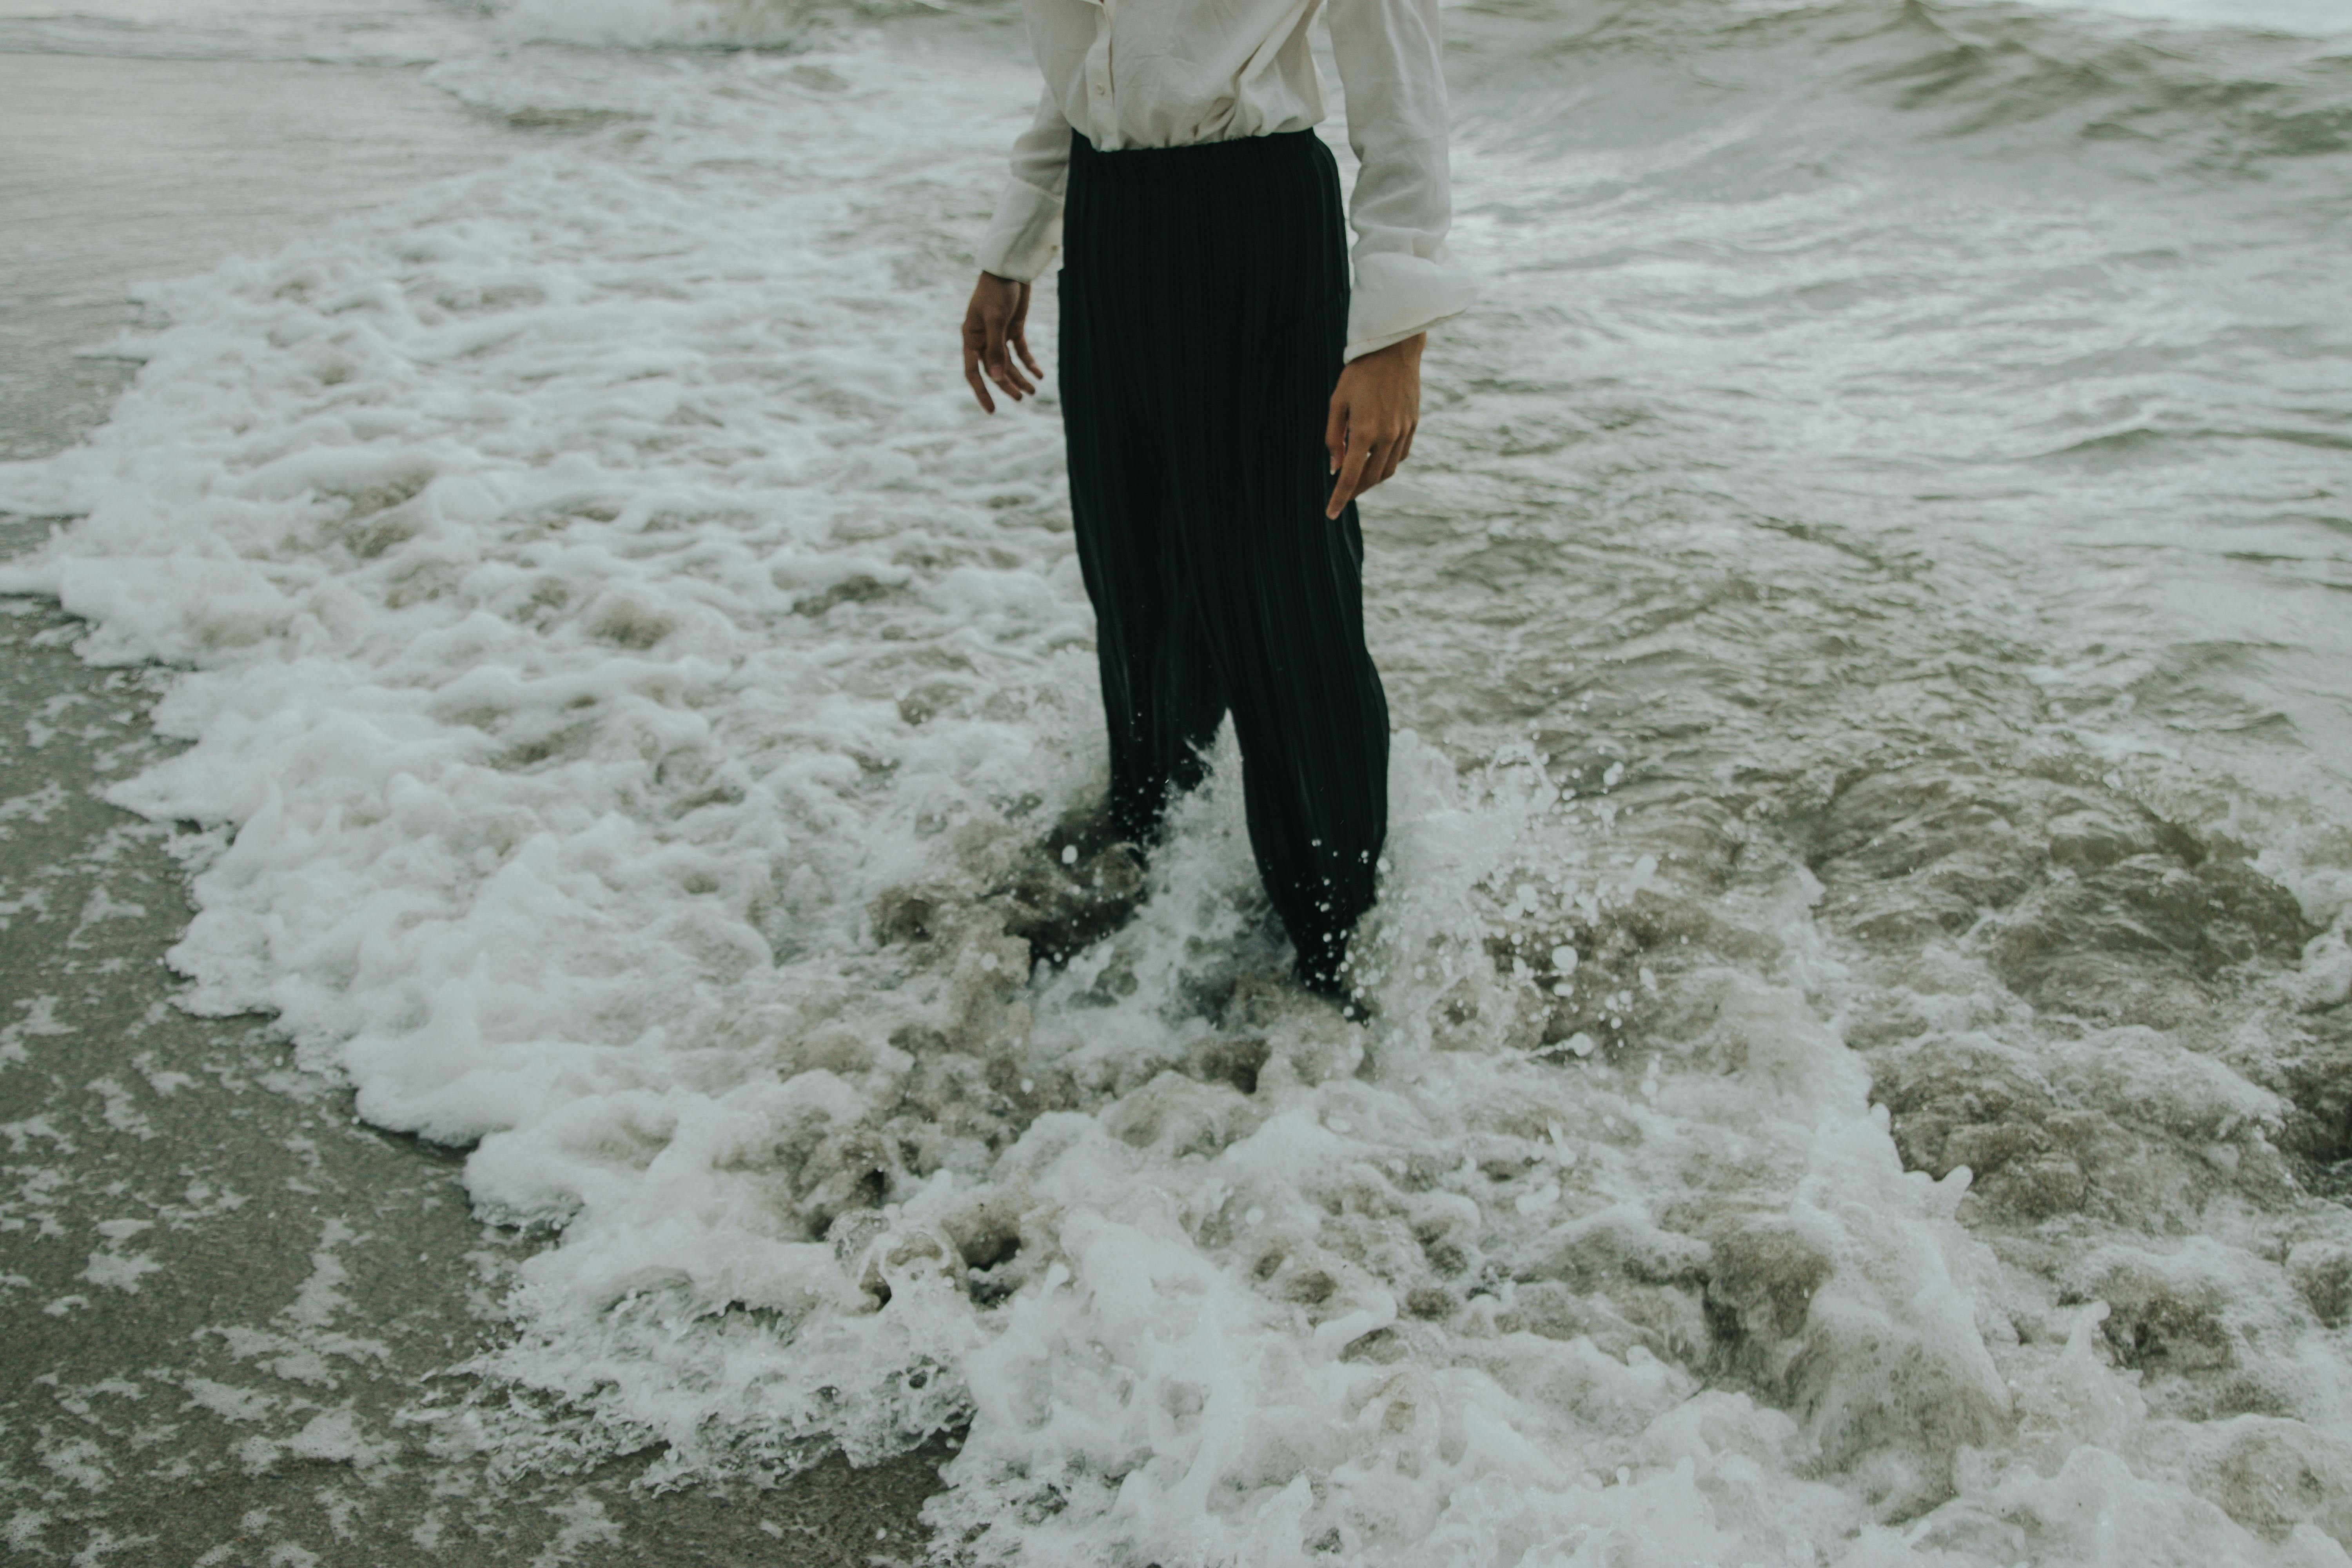 Man with black pants in ocean